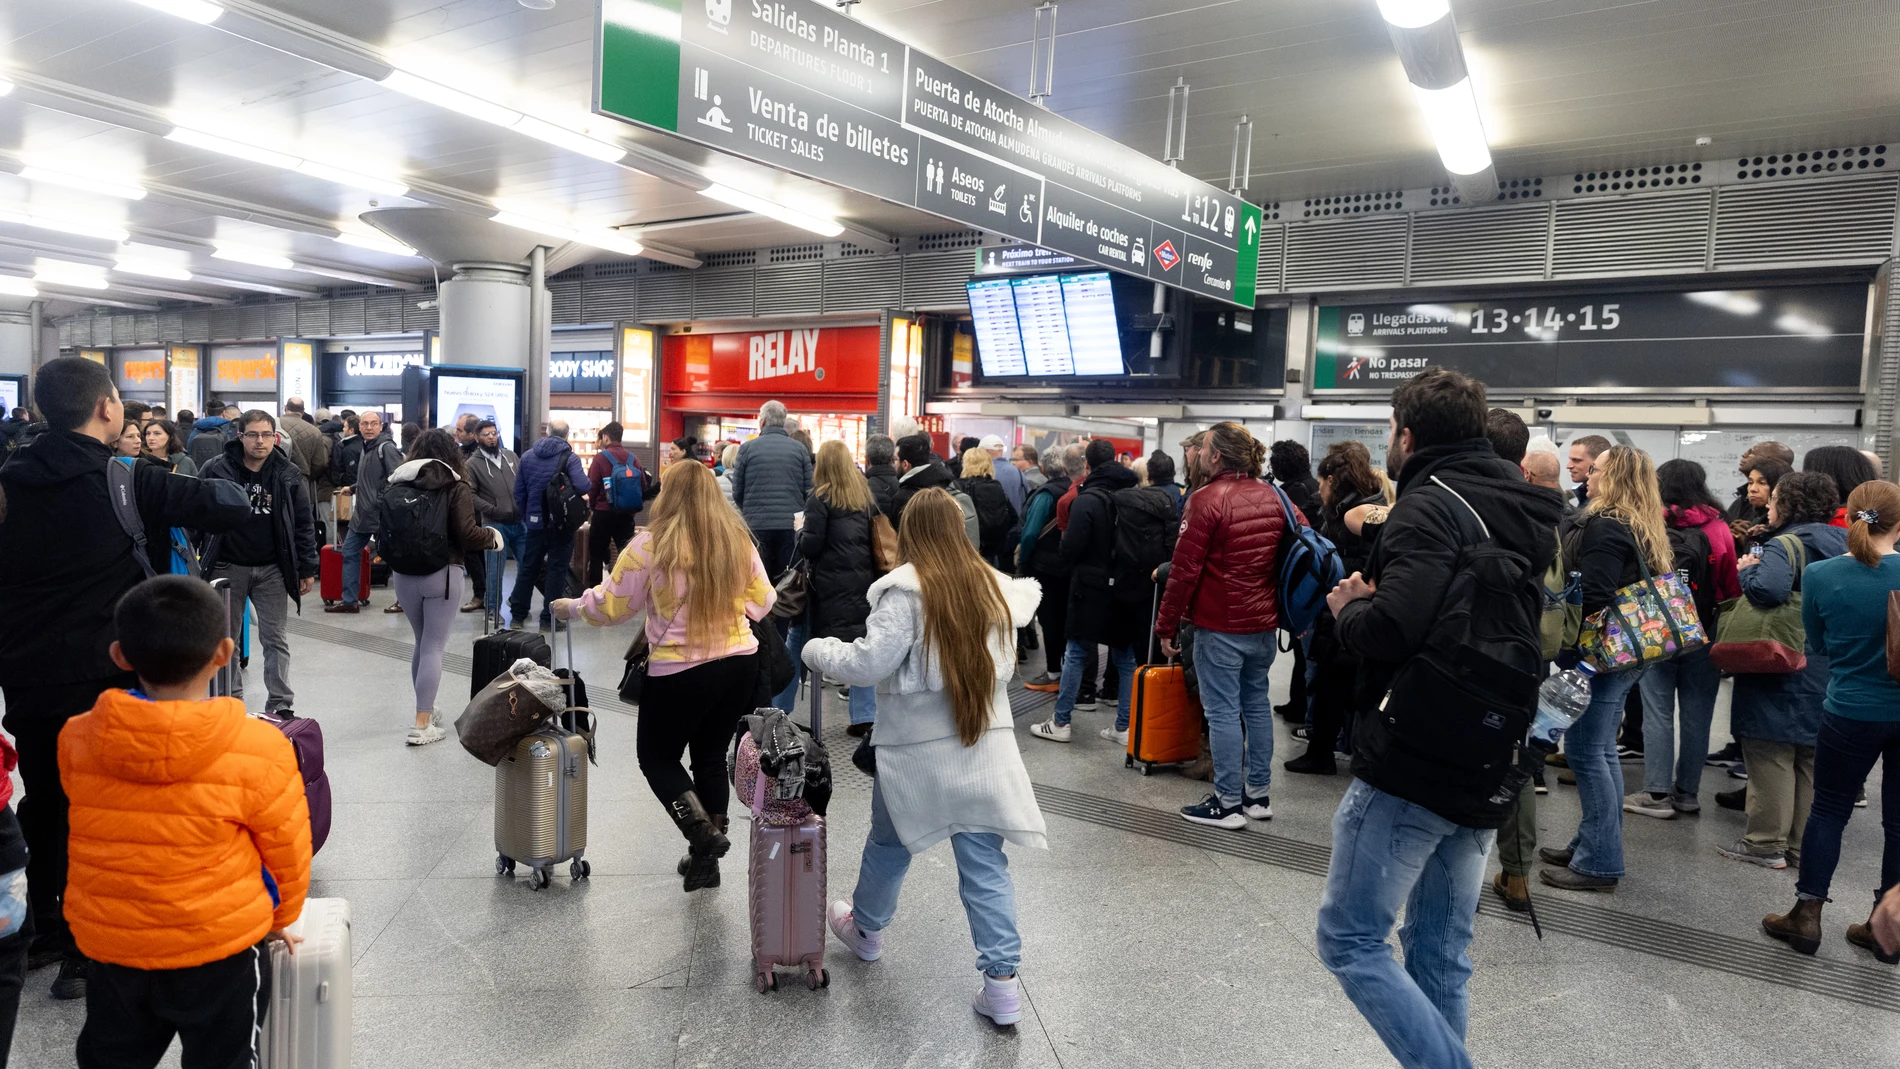 Filas de decenas de personas esperando su tren durante la huelga de Renfe y Adif, en la estación de Puerta de Atocha-Almudena Grandes,, a 9 de febrero de 2024, en Madrid (España). Los sindicatos han convocado varias jornadas de huelga en los trenes de Renfe y Adif con el objetivo de denunciar "el secuestro administrativo" de los acuerdos alcanzados por las partes a través de la negociación colectiva como la eliminación de las categorías de ingreso, en el caso de Renfe, y la implementación de ...